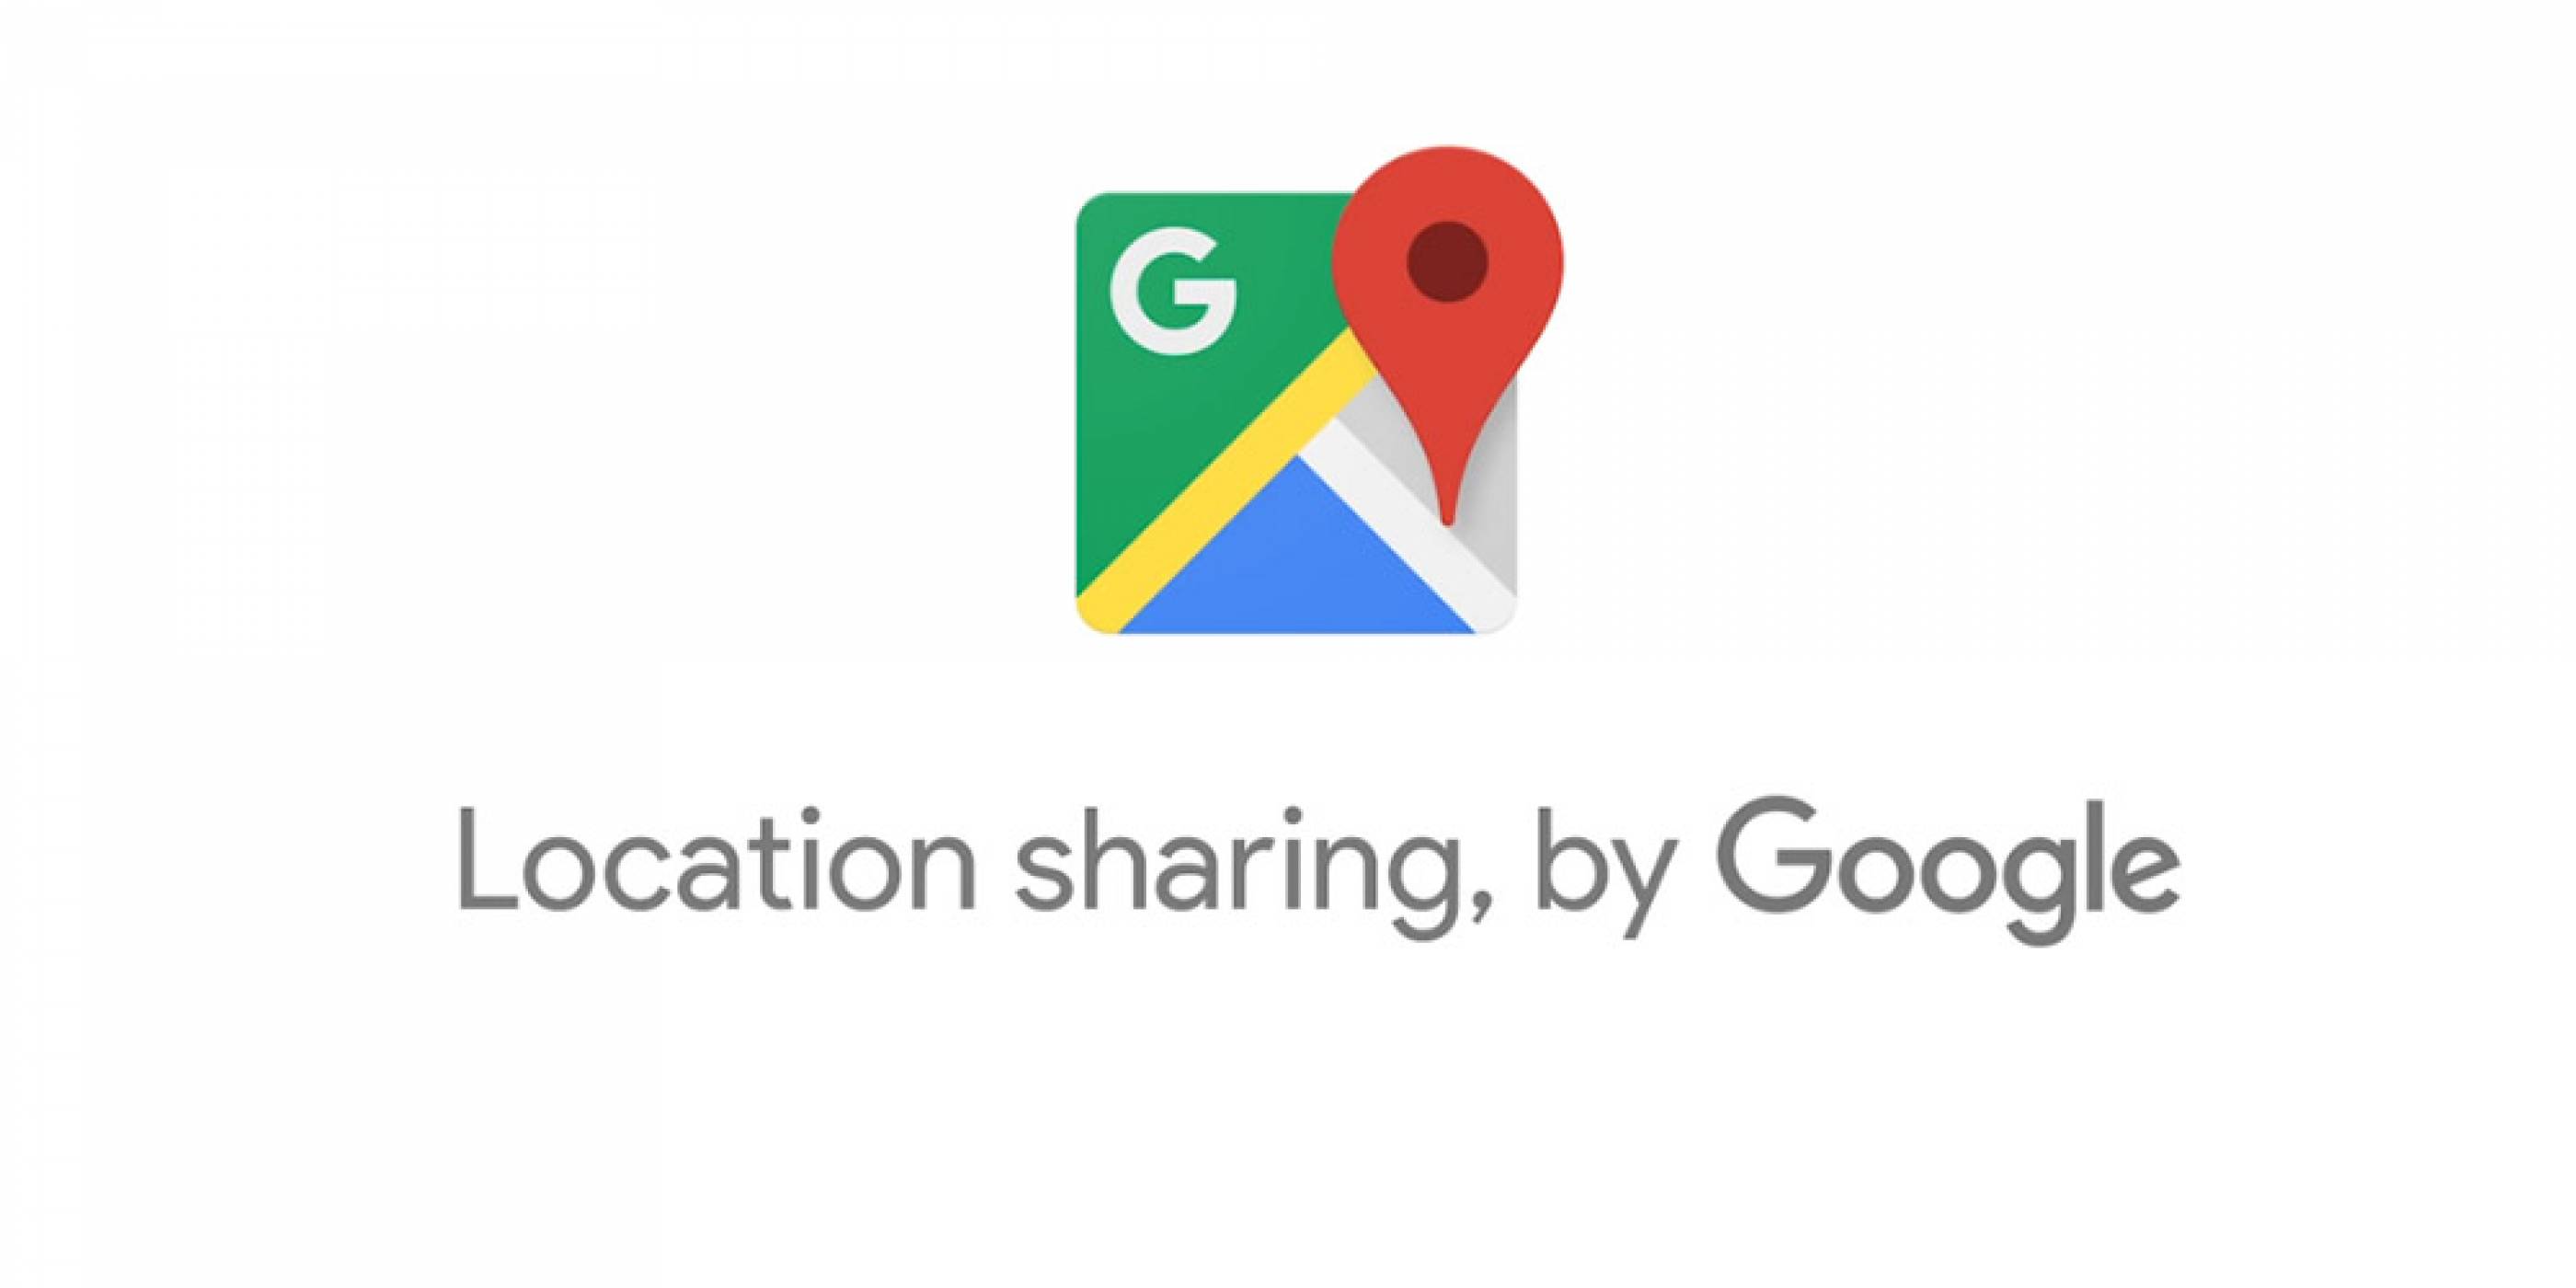 Google Maps ви дава удобен начин да споделяте местоположението си в реално време